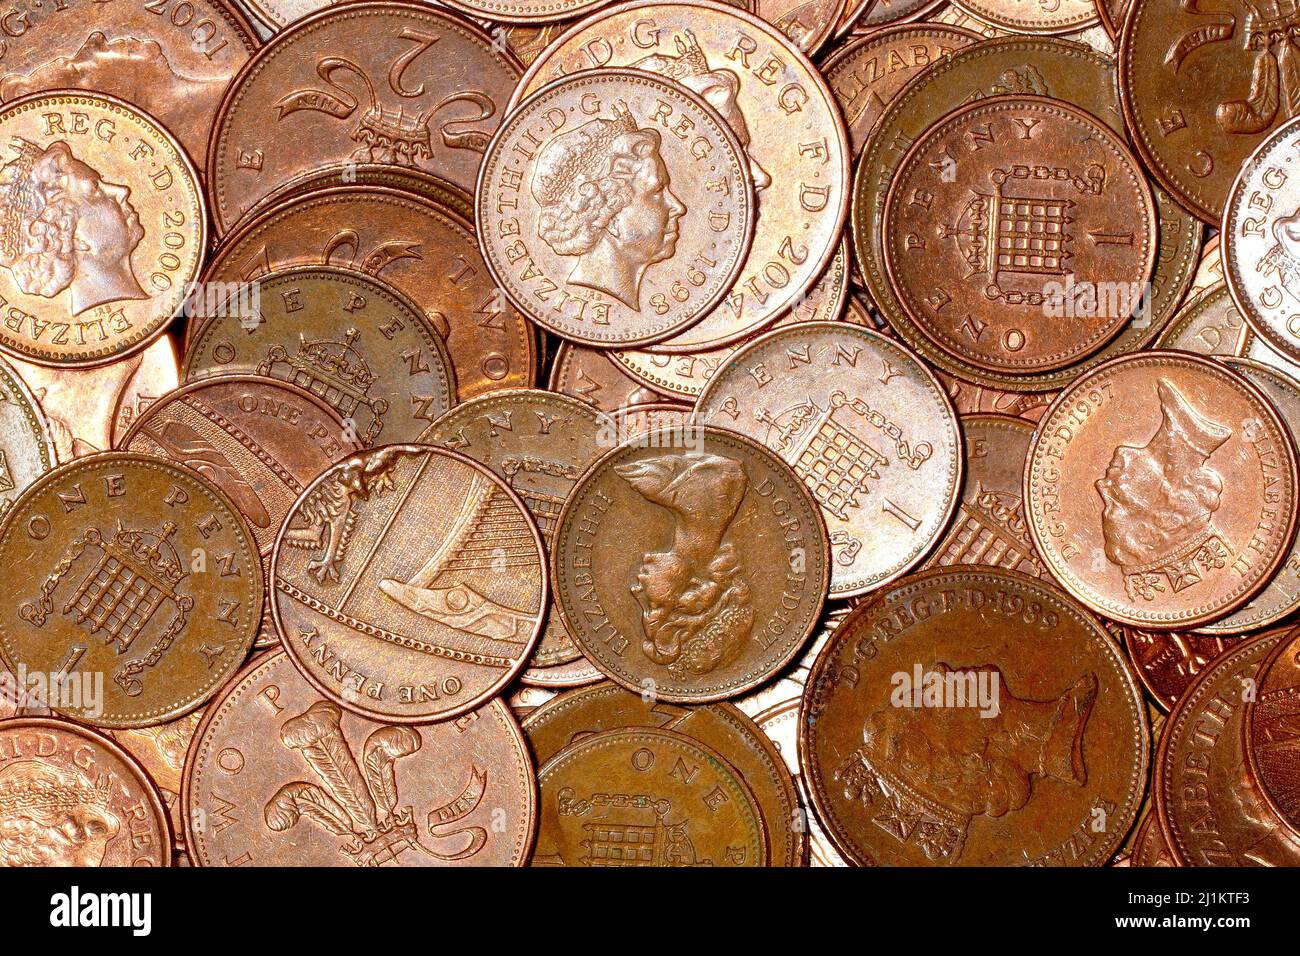 Gros plan d'une masse des pièces de la plus basse valeur en circulation au Royaume-Uni, des pièces de cent et 2 pences, avec plusieurs dessins de plus de années. Banque D'Images